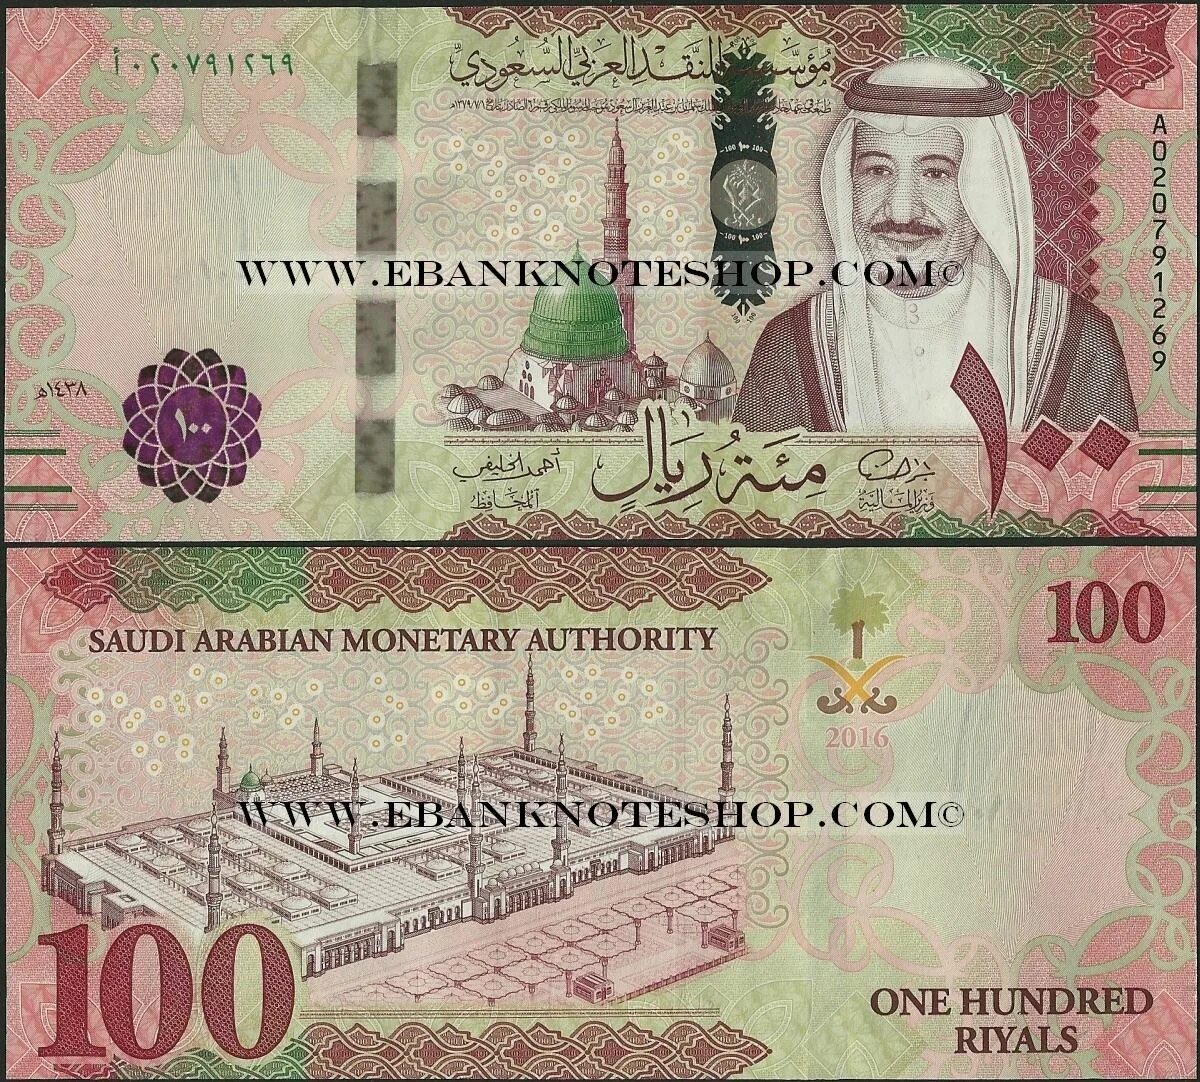 Валюта Сауд Аравия. Купюры Саудовской Аравии. Саудовский риал 100. Арабские купюры. 180 000 000 дирхам в рубли